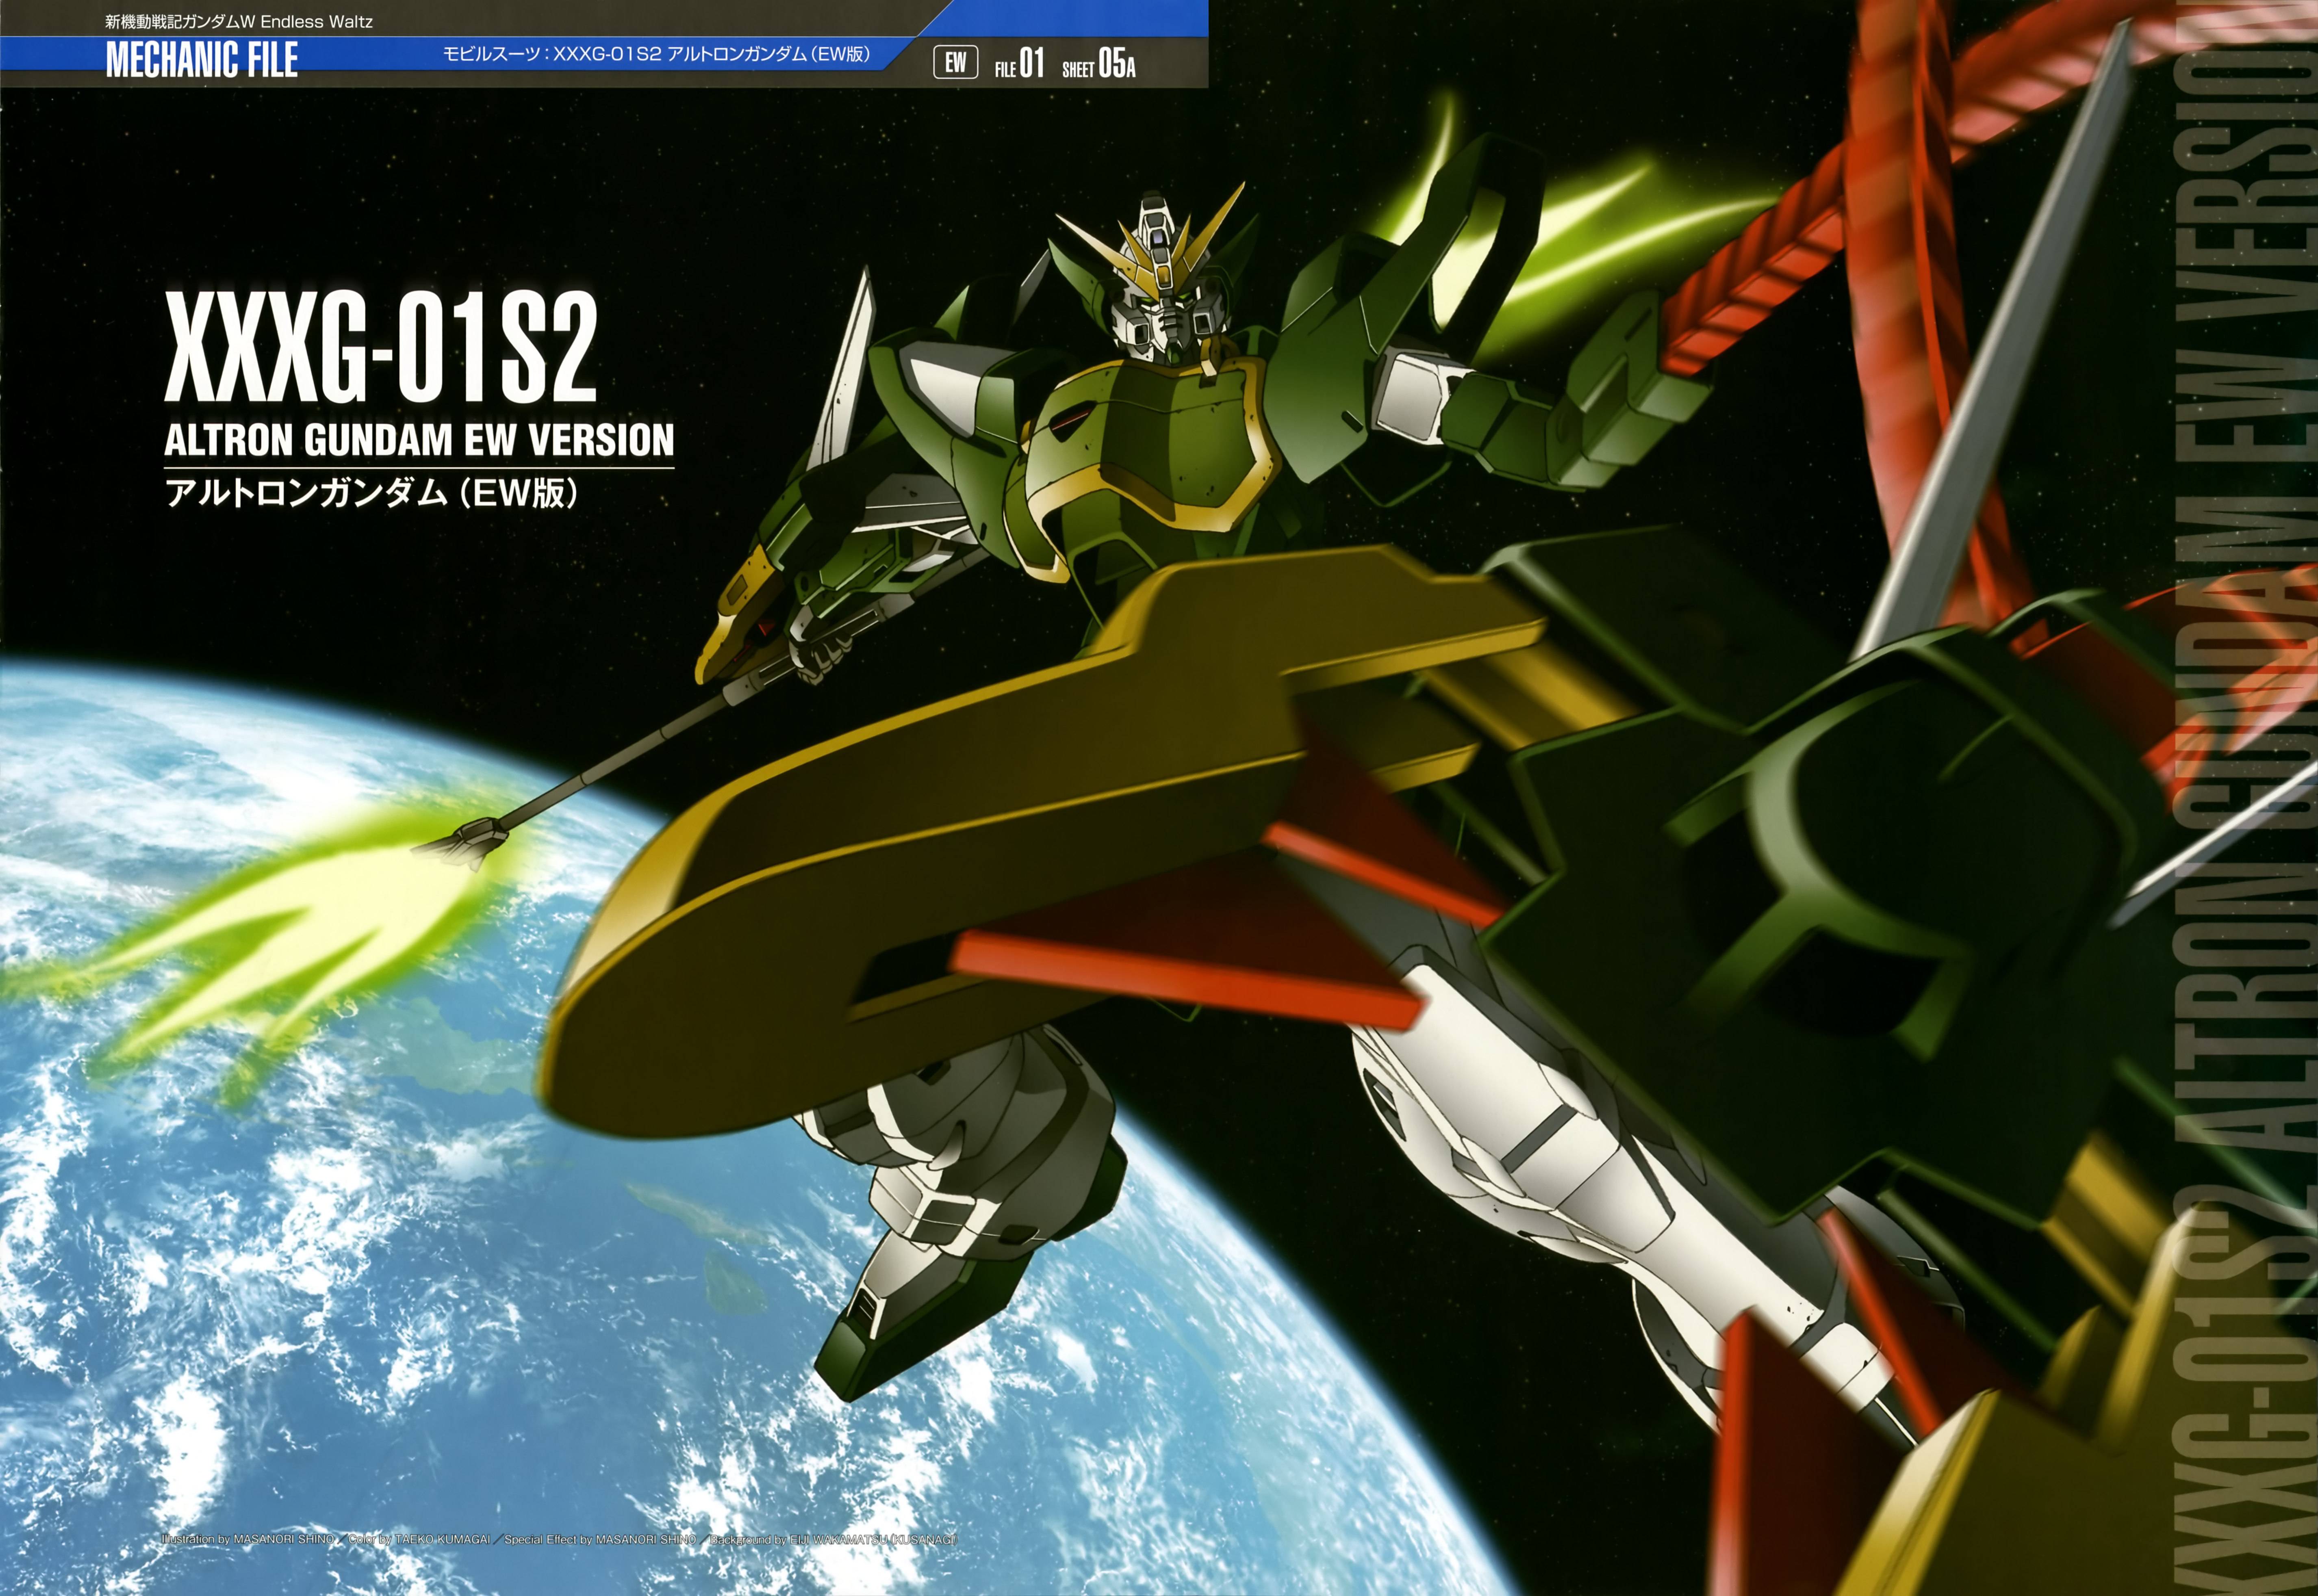 Anime 5704x3928 anime Gundam mechs Super Robot Taisen Mobile Suit Gundam Wing Altron Gundam artwork digital art